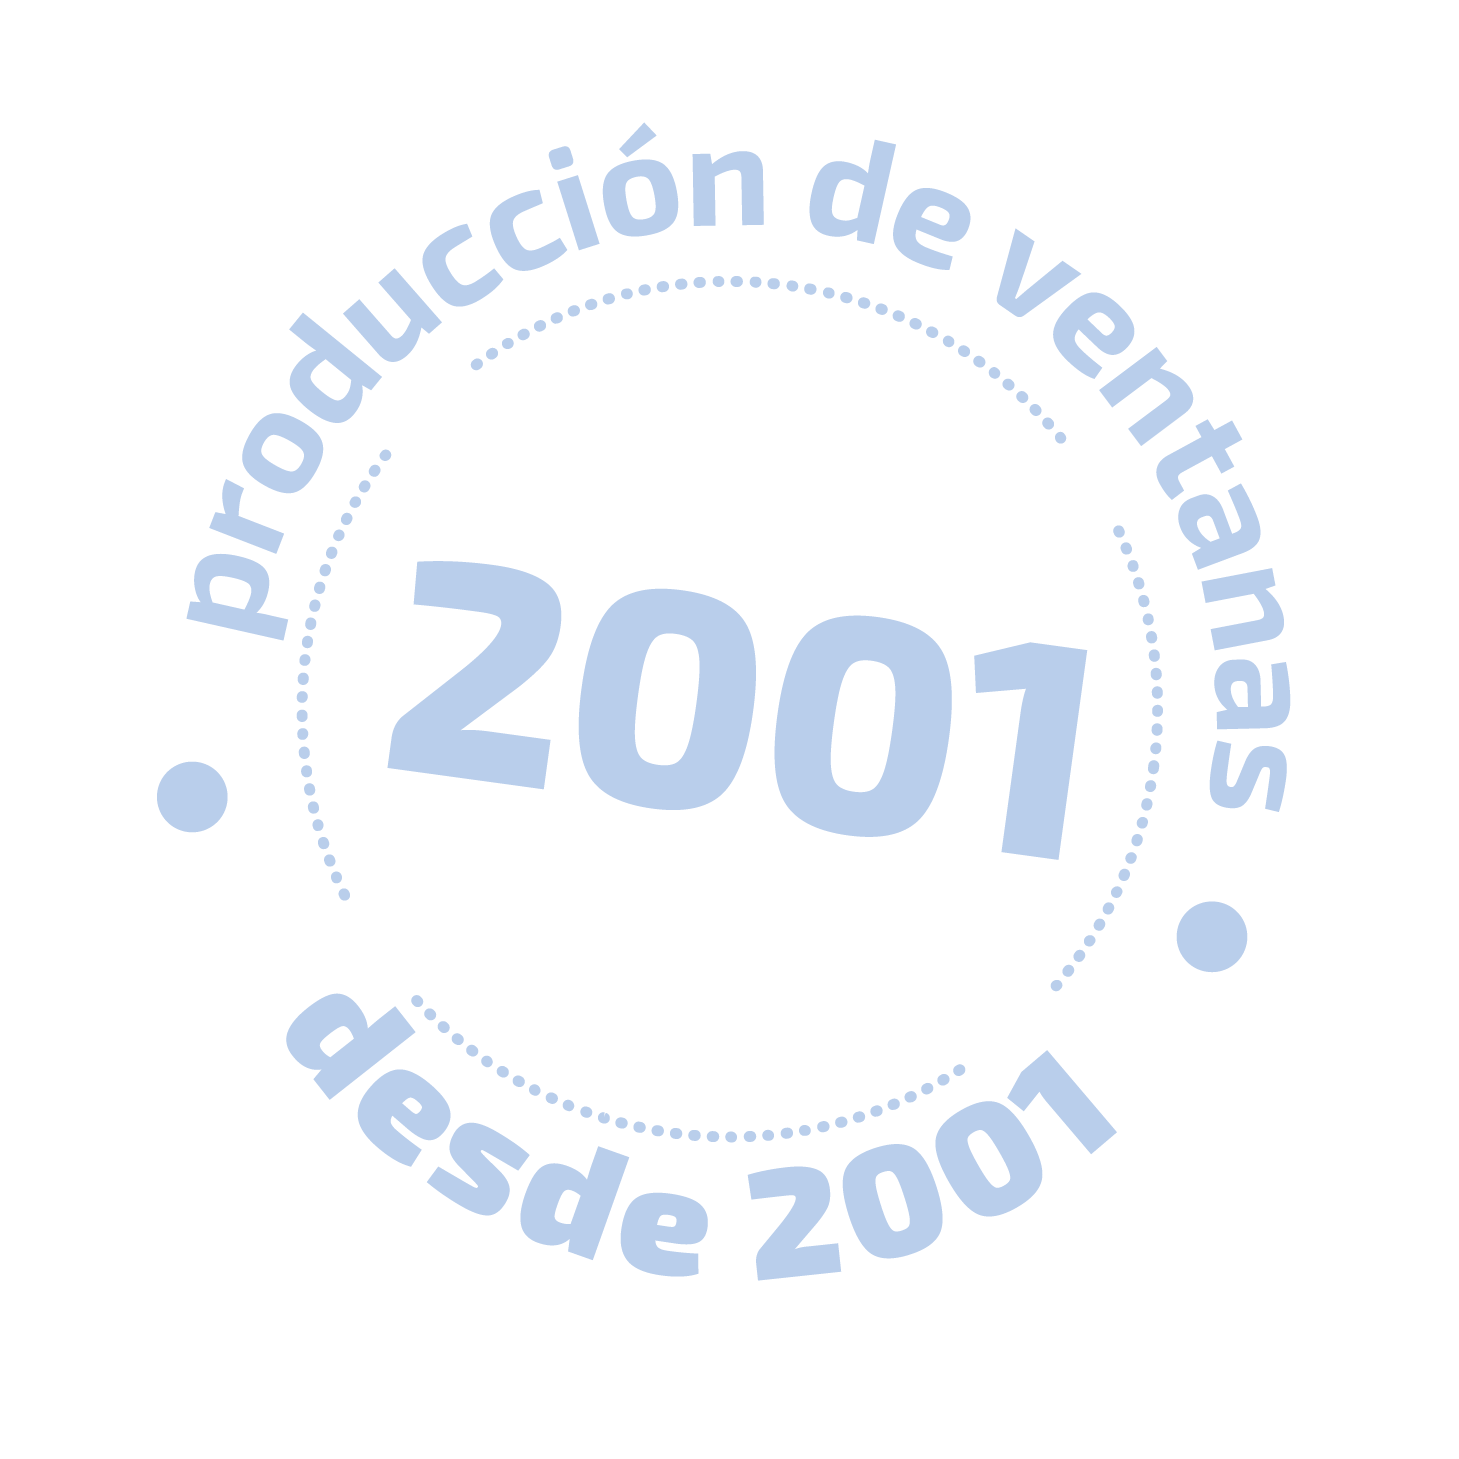 producción de ventanas desde 2001